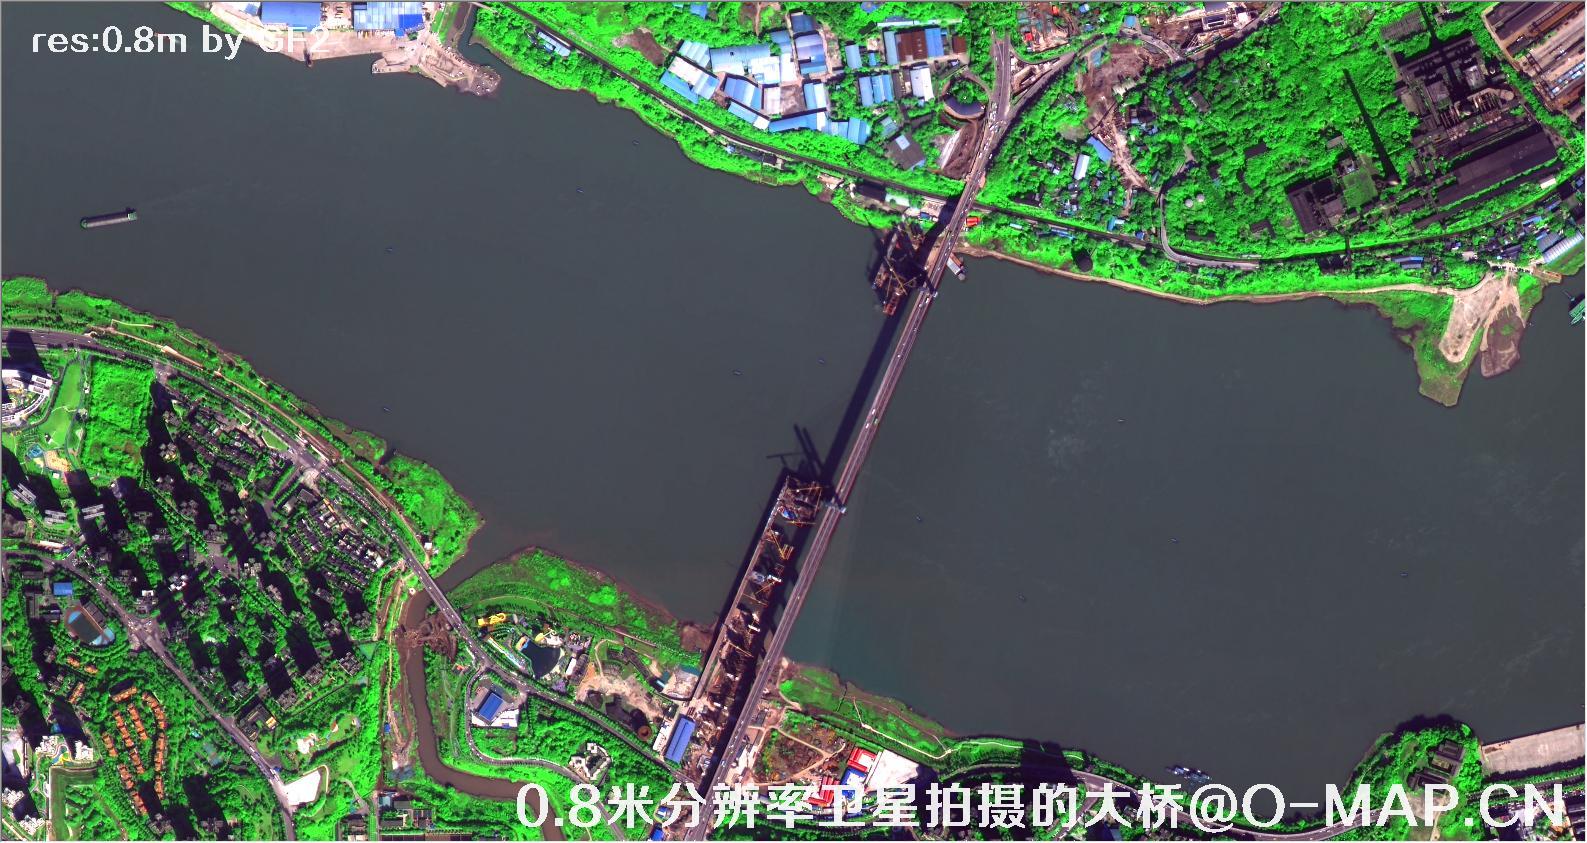 0.8米分辨率卫星拍摄的高清大桥卫星图